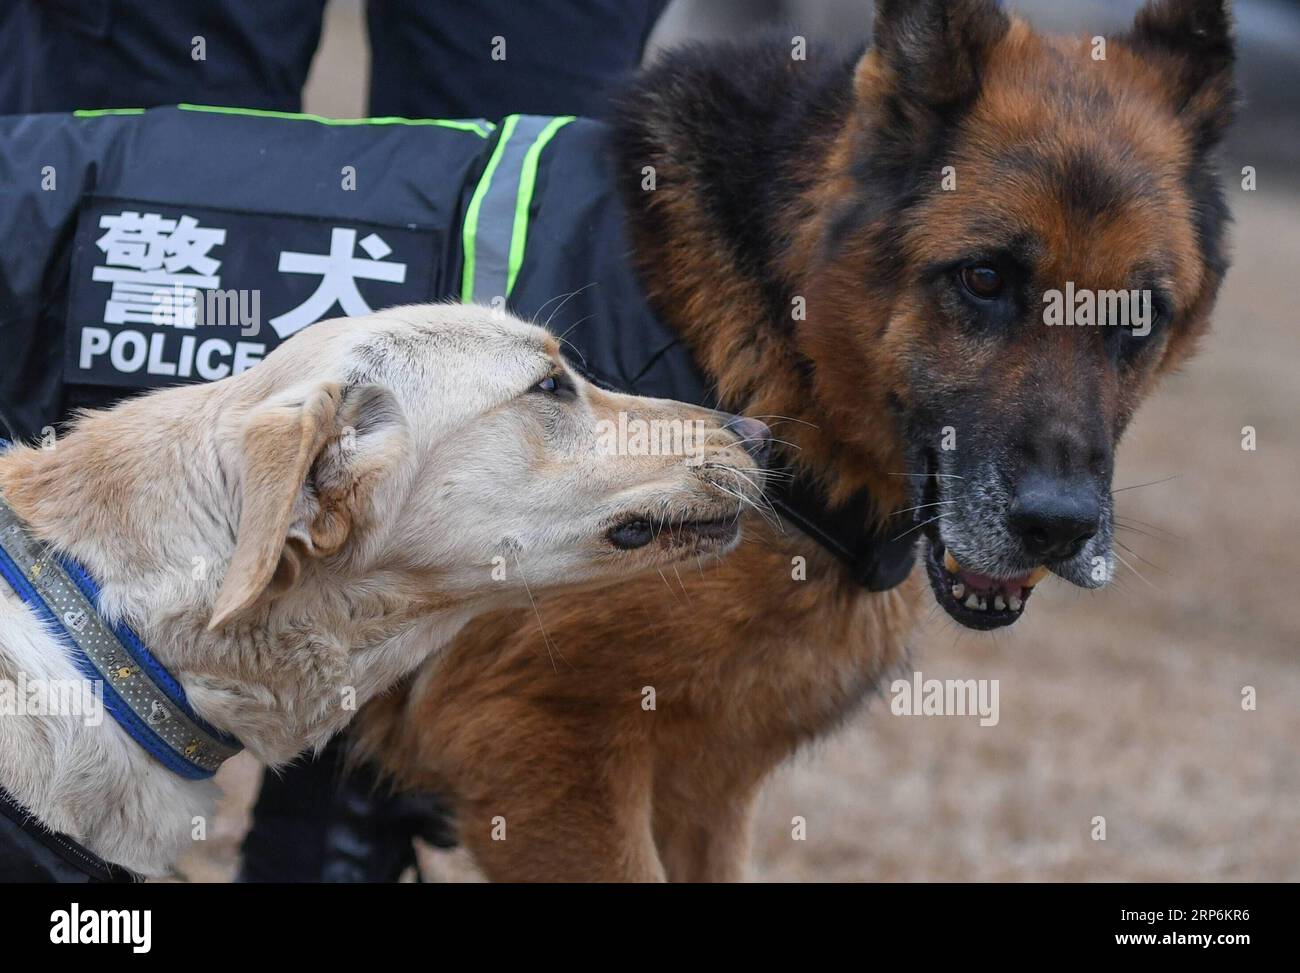 (190116) -- WUHAN, 16 janvier 2019 (Xinhua) -- le chien policier Pi te (L) interagit avec Heng Heng à Wuhan, capitale de la province du Hubei en Chine centrale, 15 janvier 2019. Pi te , un Labrador pour la recherche d'engins explosifs, est né en mars 2018. Il a été formé pendant 10 mois et coopérera avec le berger allemand Heng Heng pour la sécurité ferroviaire lors de la prochaine ruée de voyage du Festival du printemps. (Xinhua/Cheng min) CHINA-HUBEI-WUHAN-POLICE CHIEN-DRESSAGE (CN) PUBLICATIONxNOTxINxCHN Banque D'Images